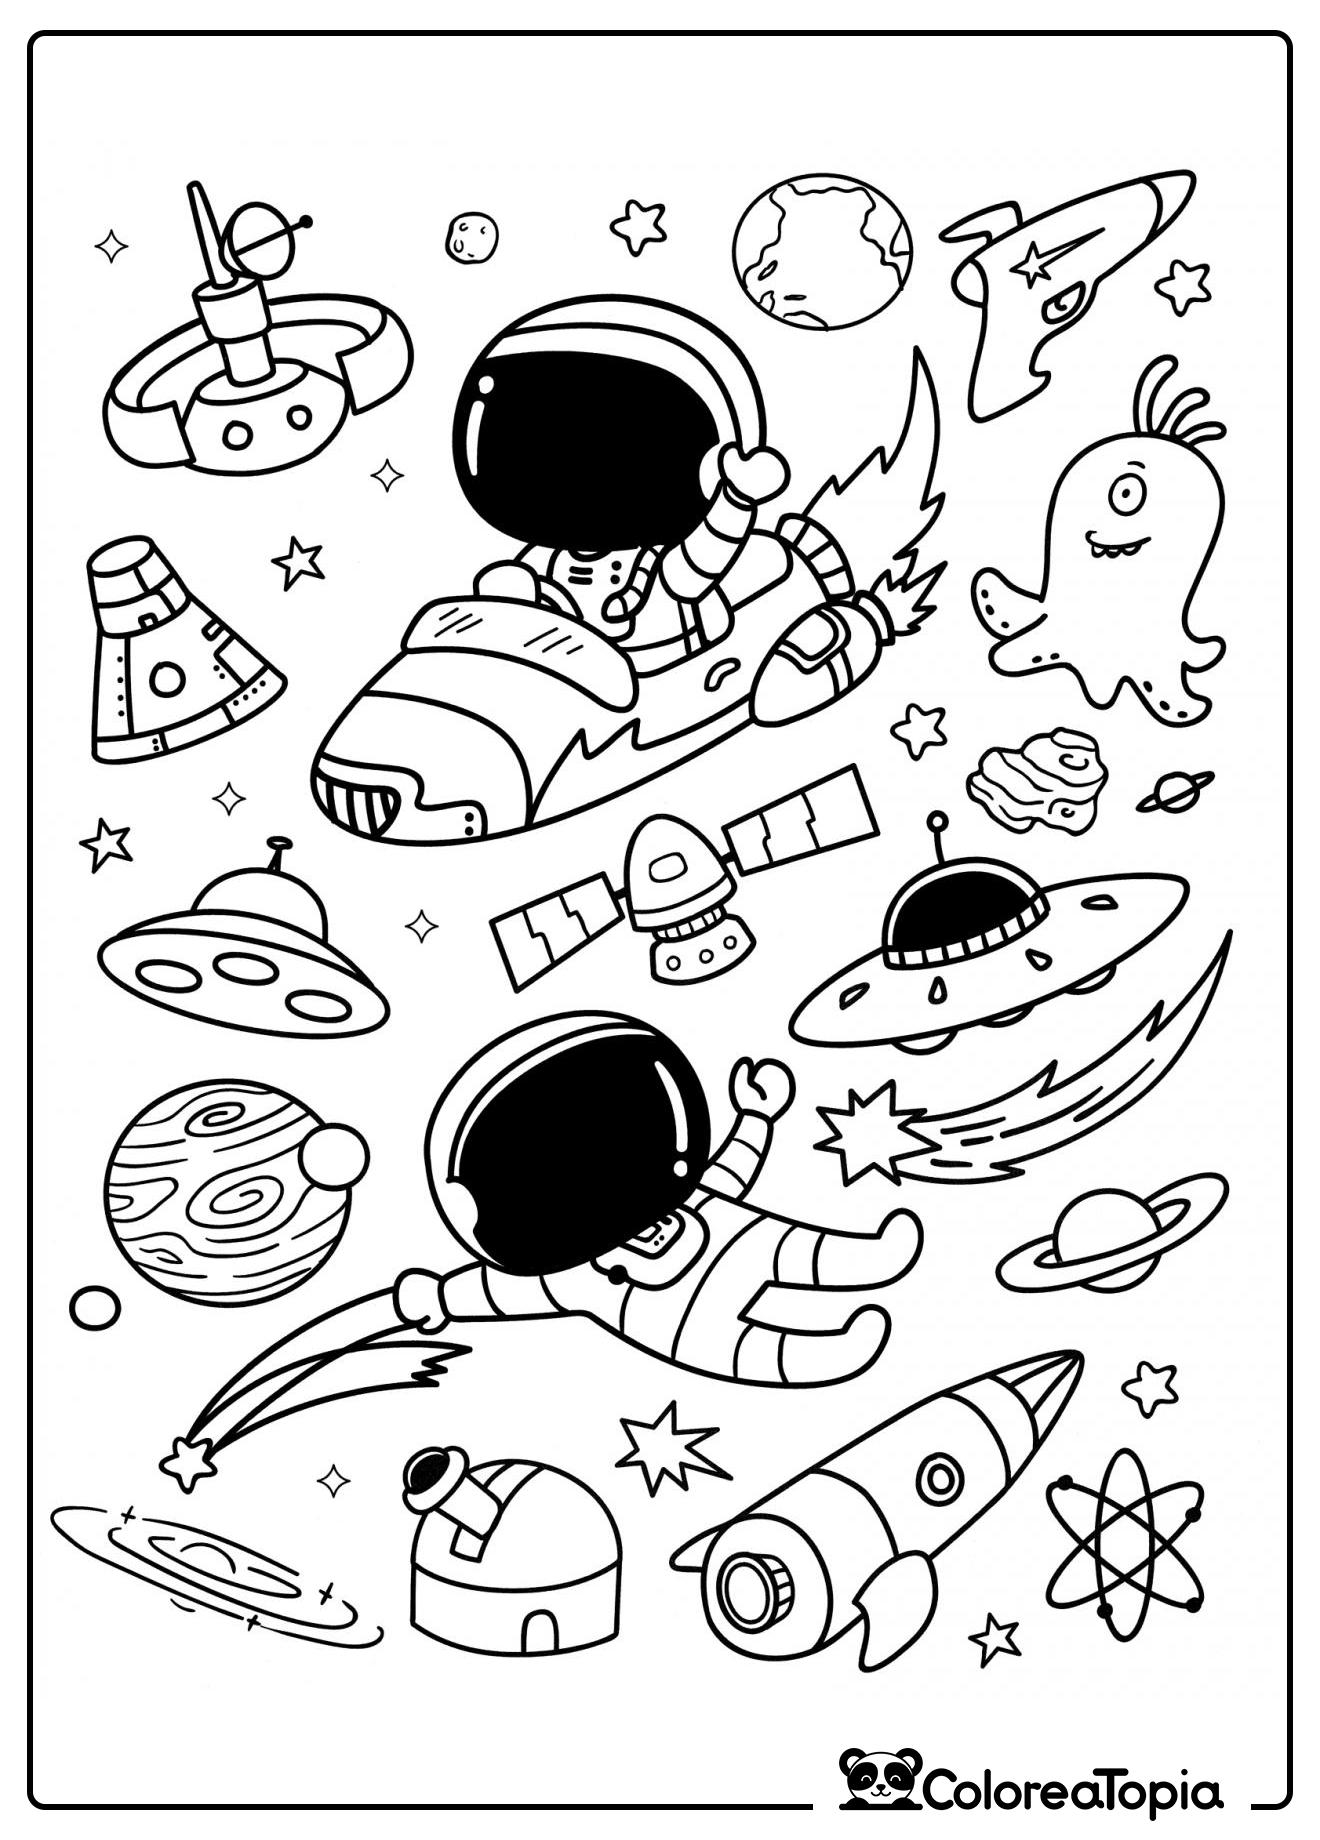 El astronauta está volando en su nave espacial - dibujo para colorear